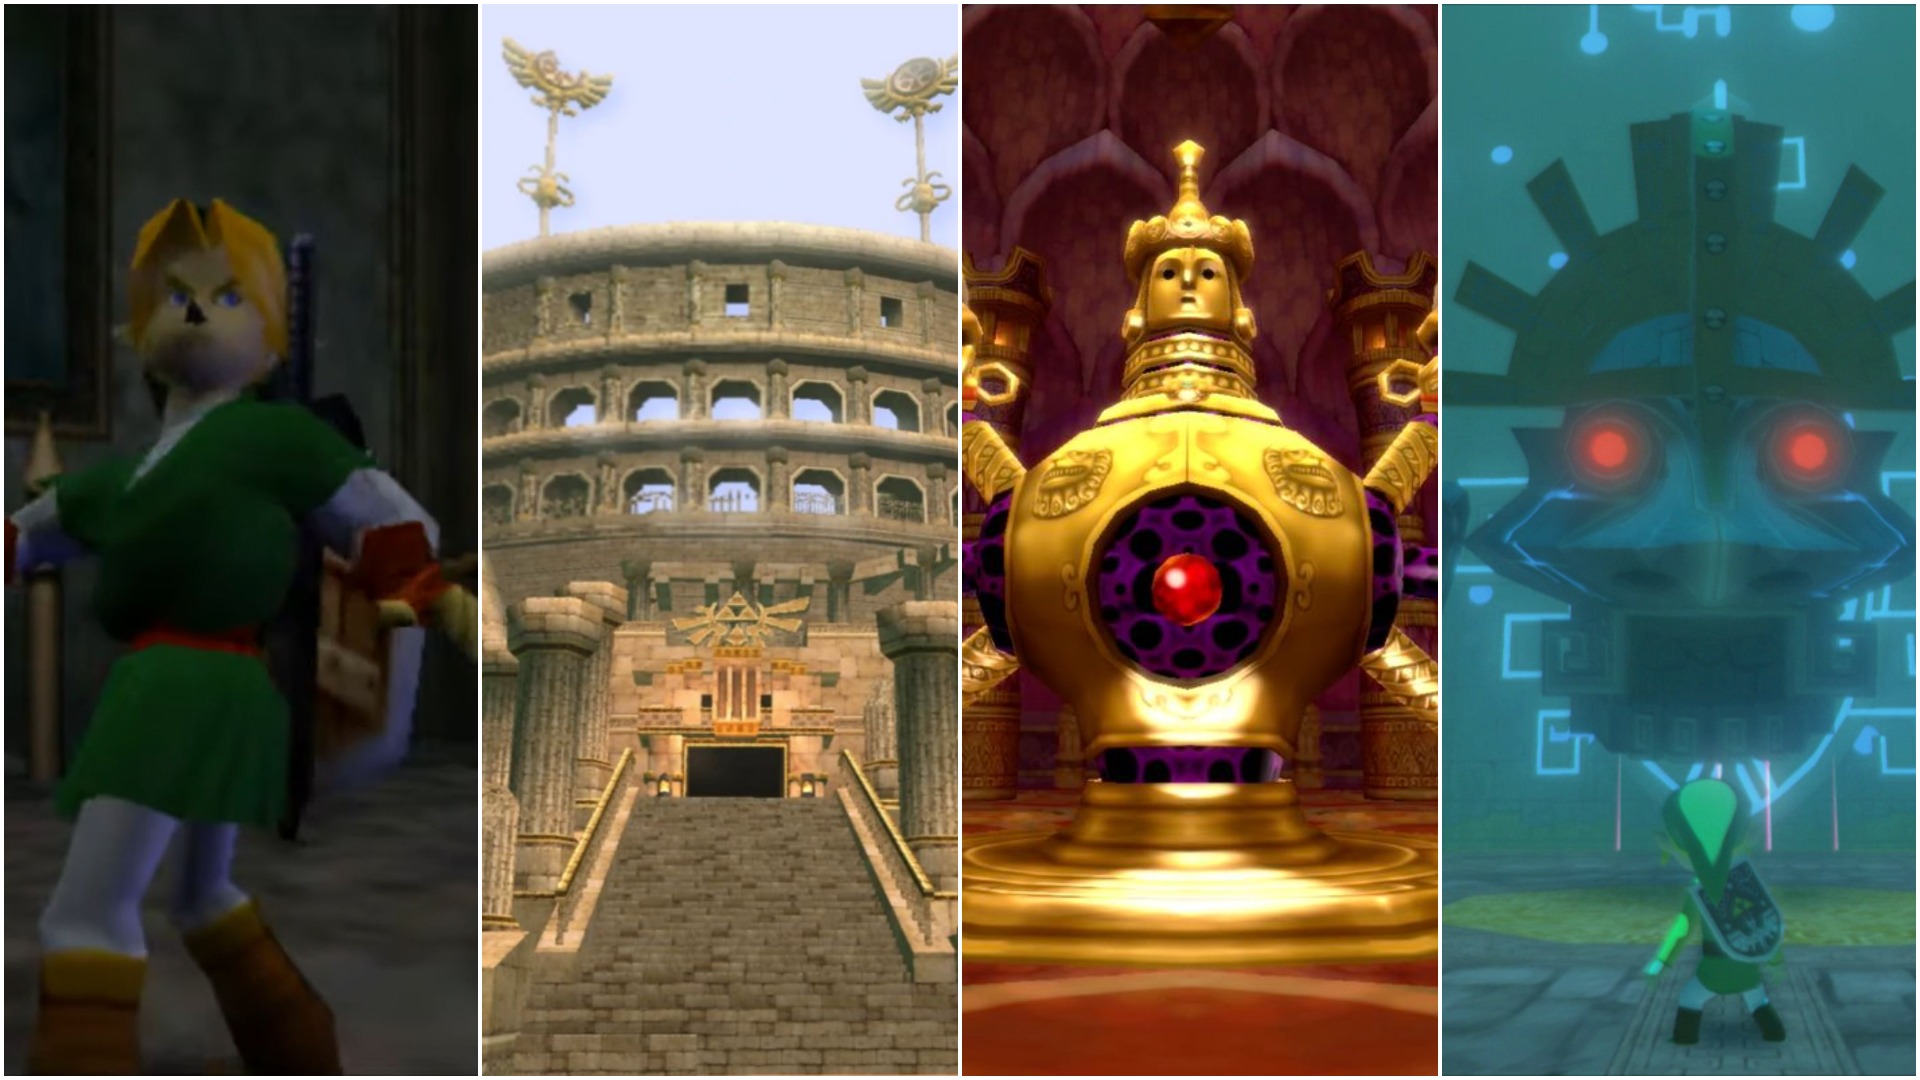 Ranking the Top 50 Dungeons in the Zelda Series - Zelda Dungeon